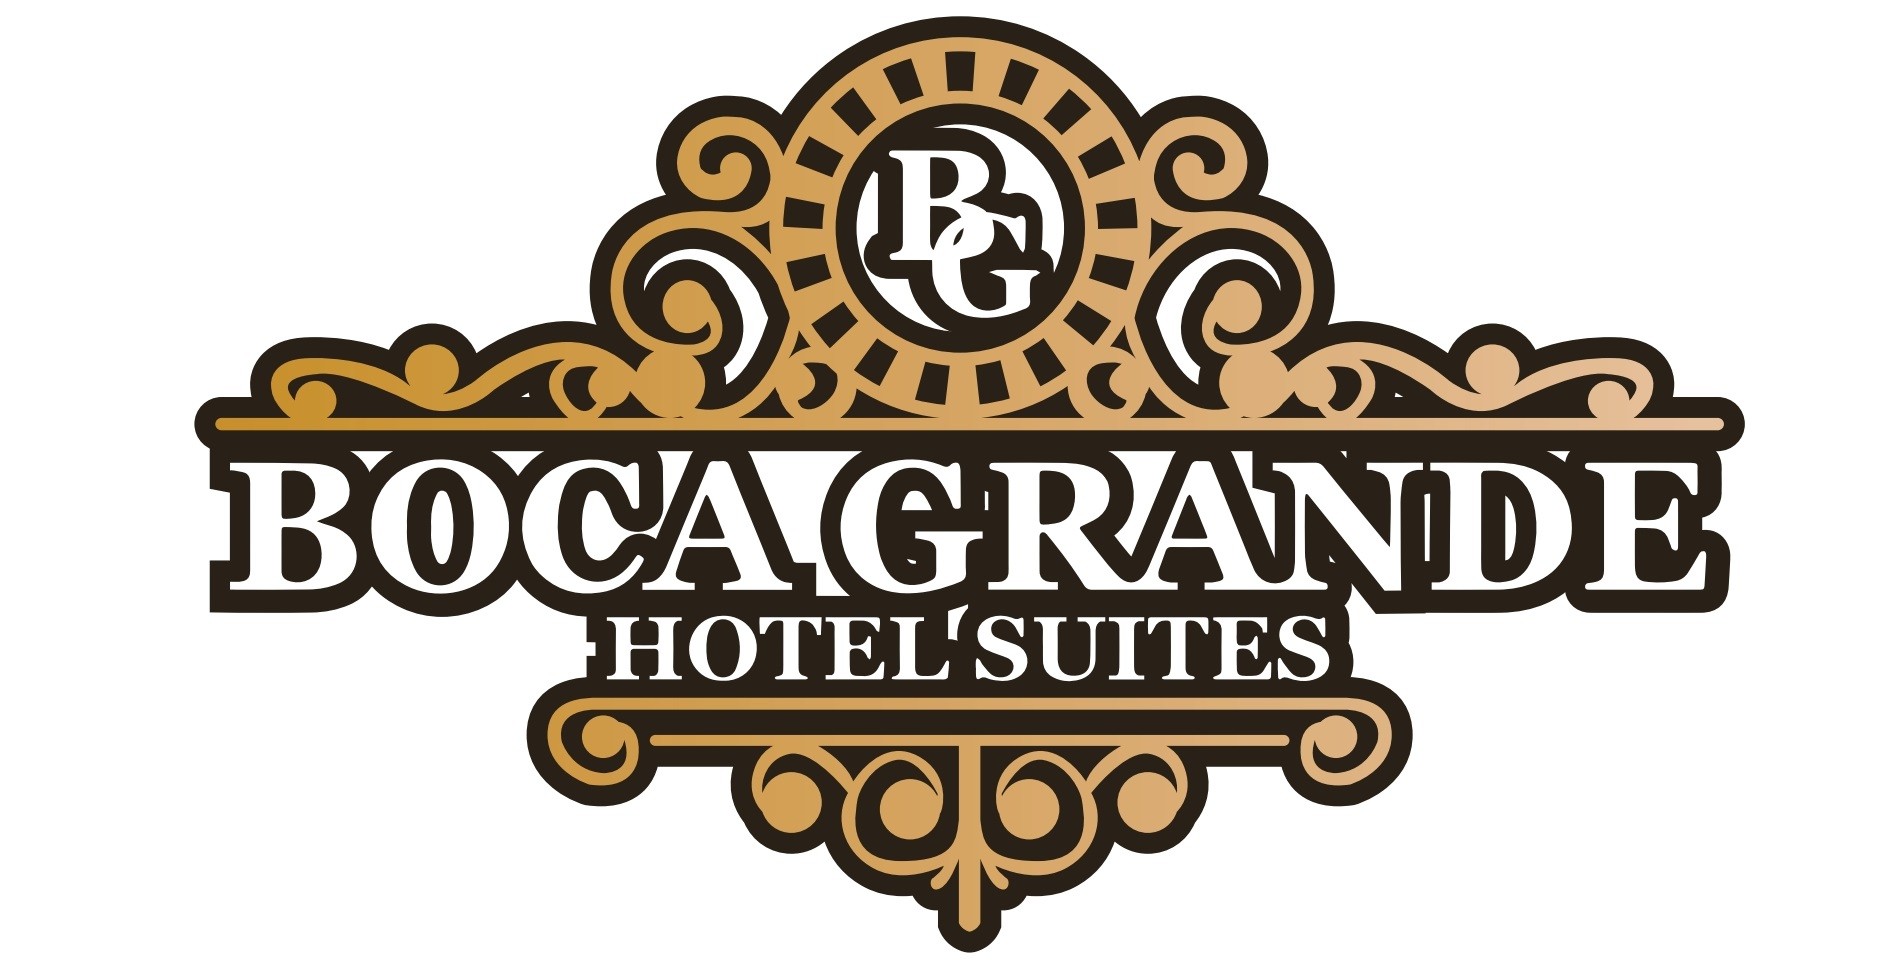 Boca Grande Hotel Suites en Boca Chica Andress solicita Recepcionista